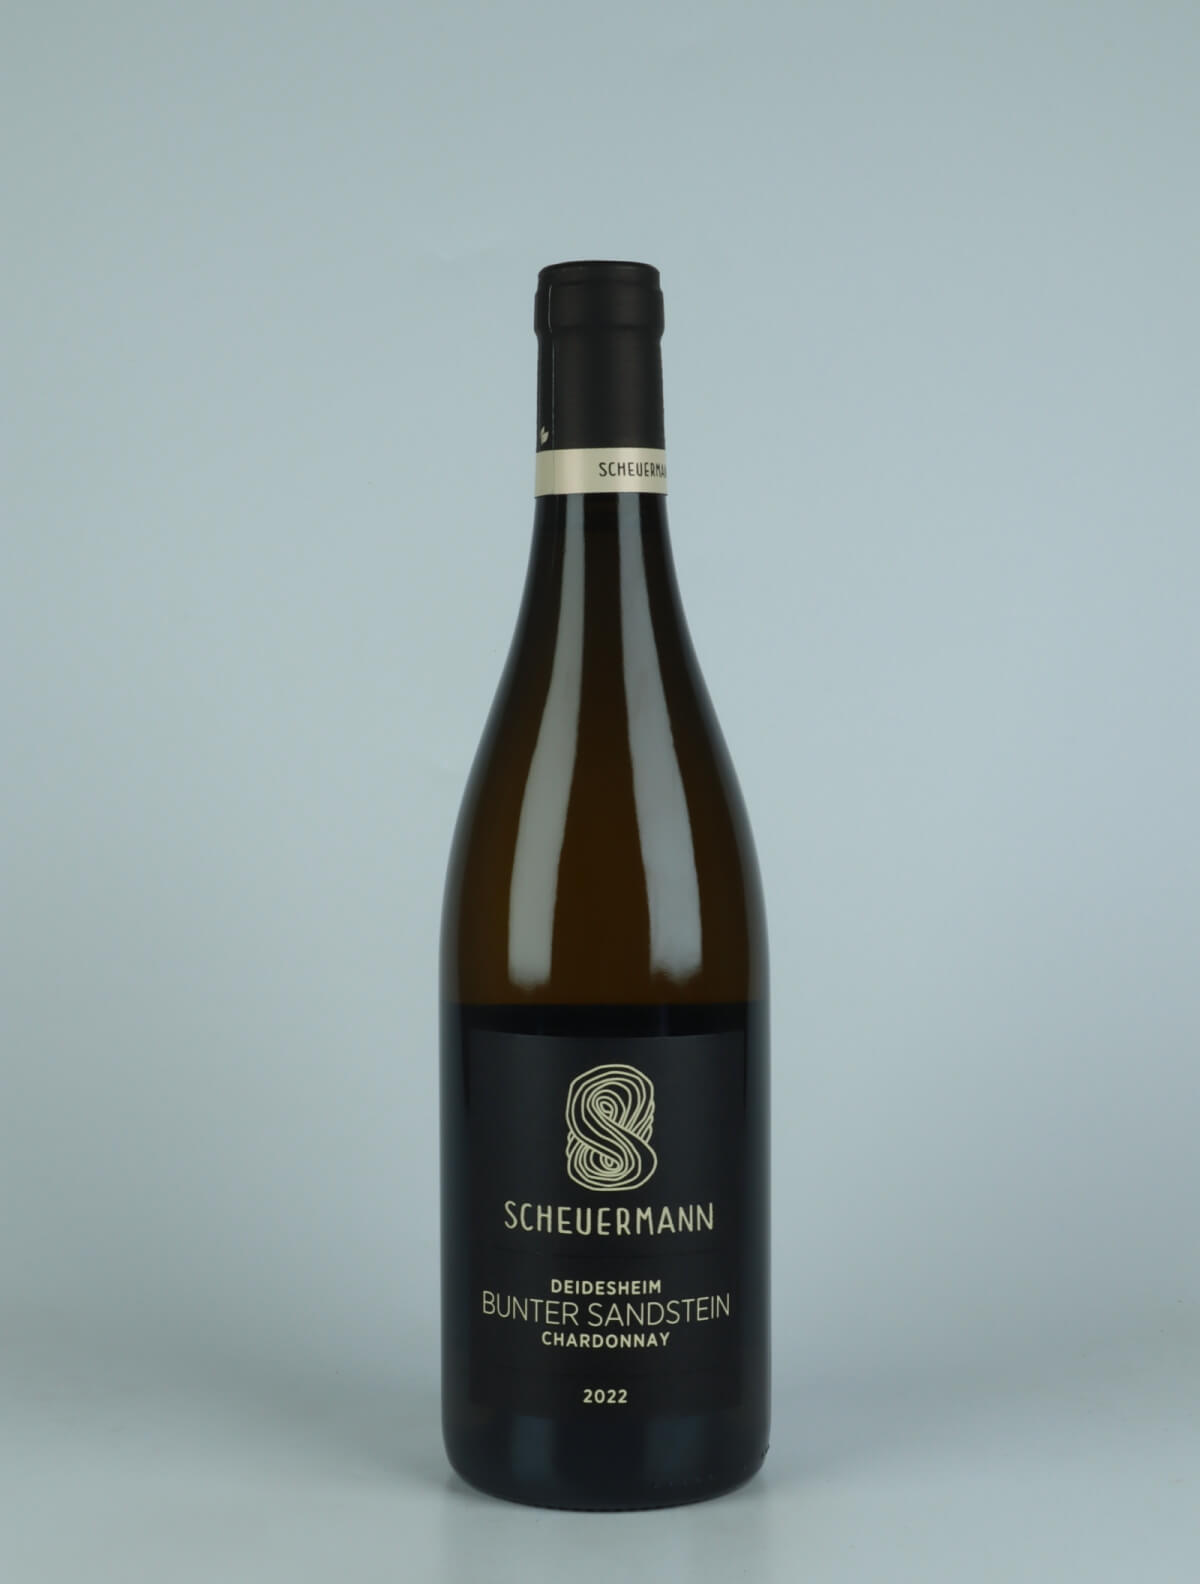 En flaske 2022 Chardonnay Bunter Sandstein - Deidesheim Hvidvin fra Weingut Scheuermann, Pfalz i Tyskland